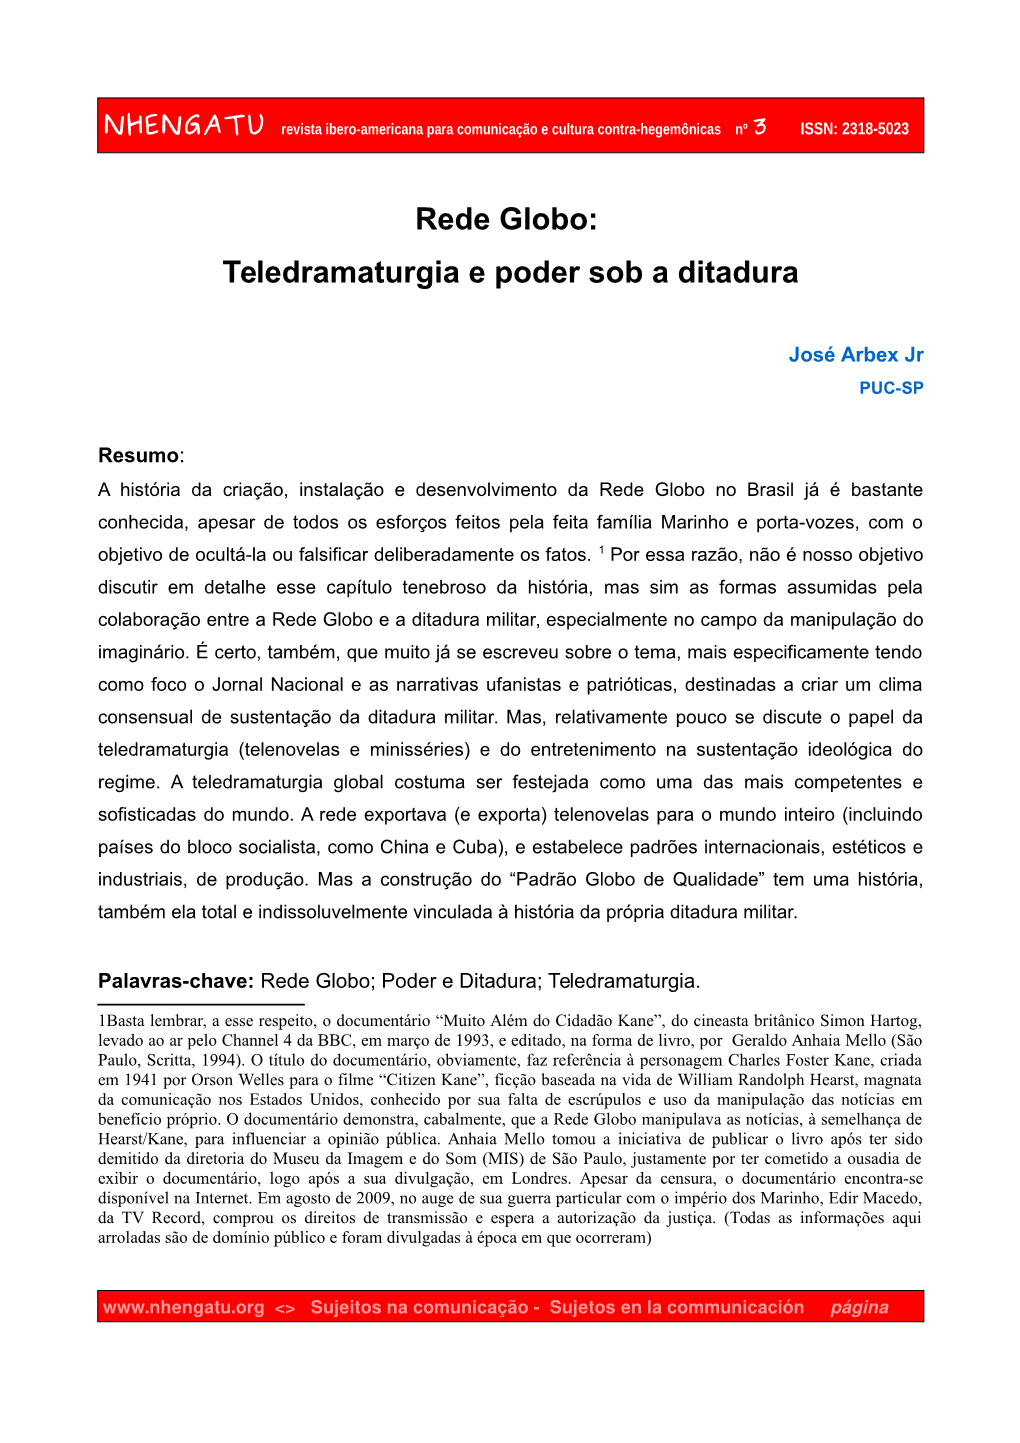 Rede Globo: Teledramaturgia E Poder Sob a Ditadura